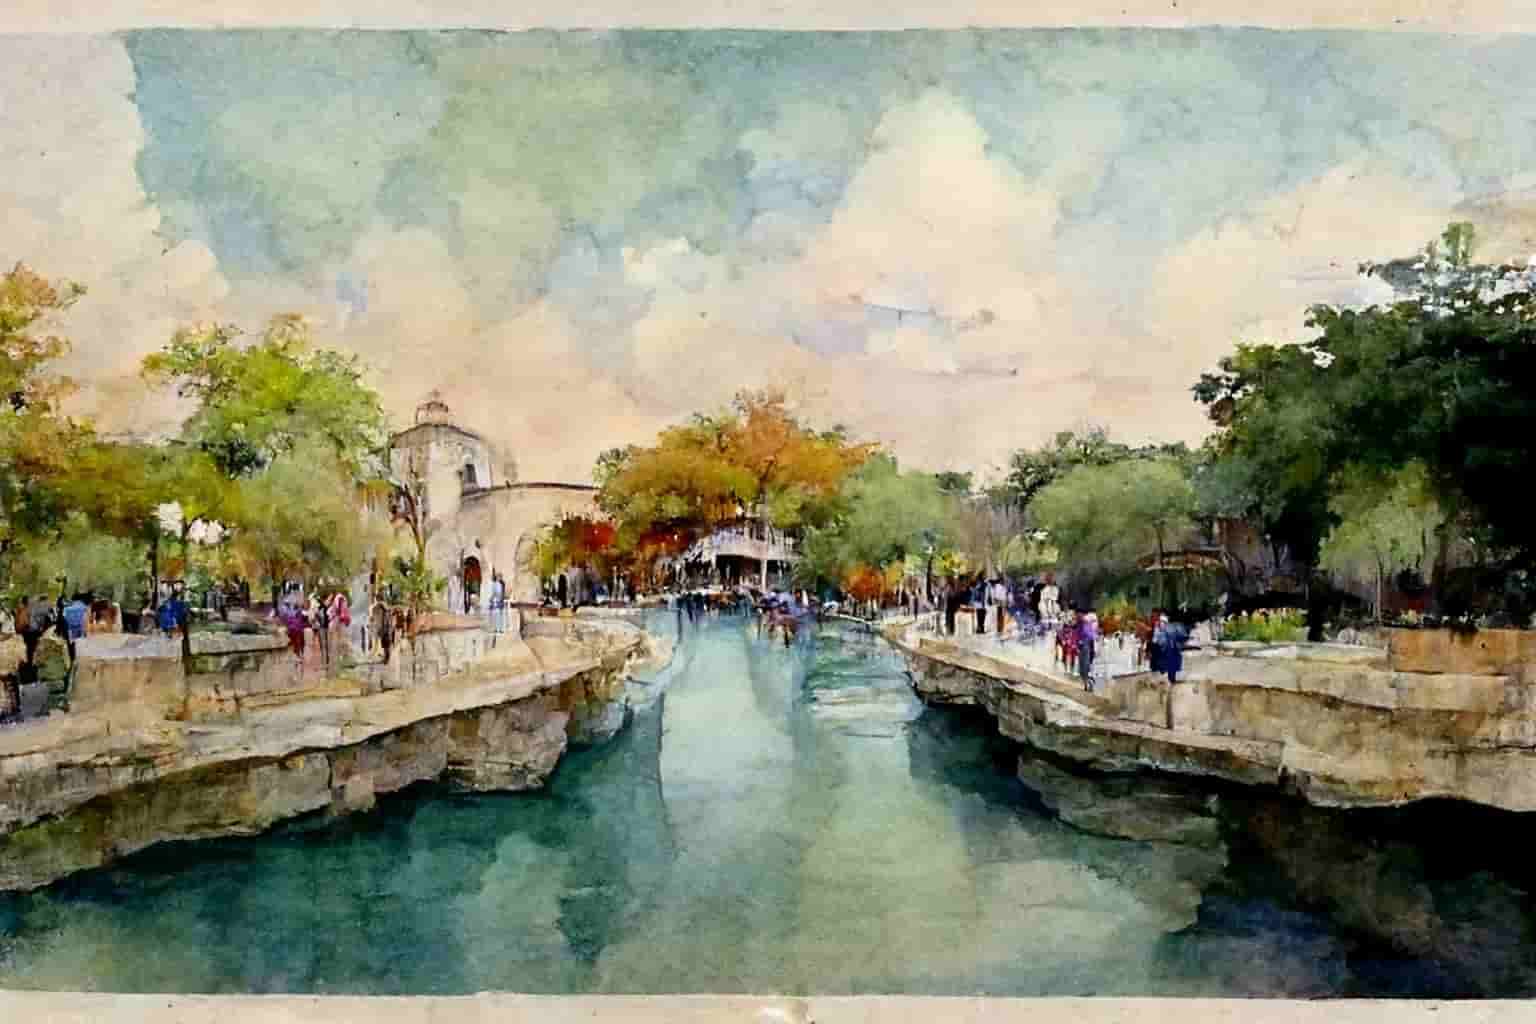 The Riverwalk in San Antonio, watercolor art